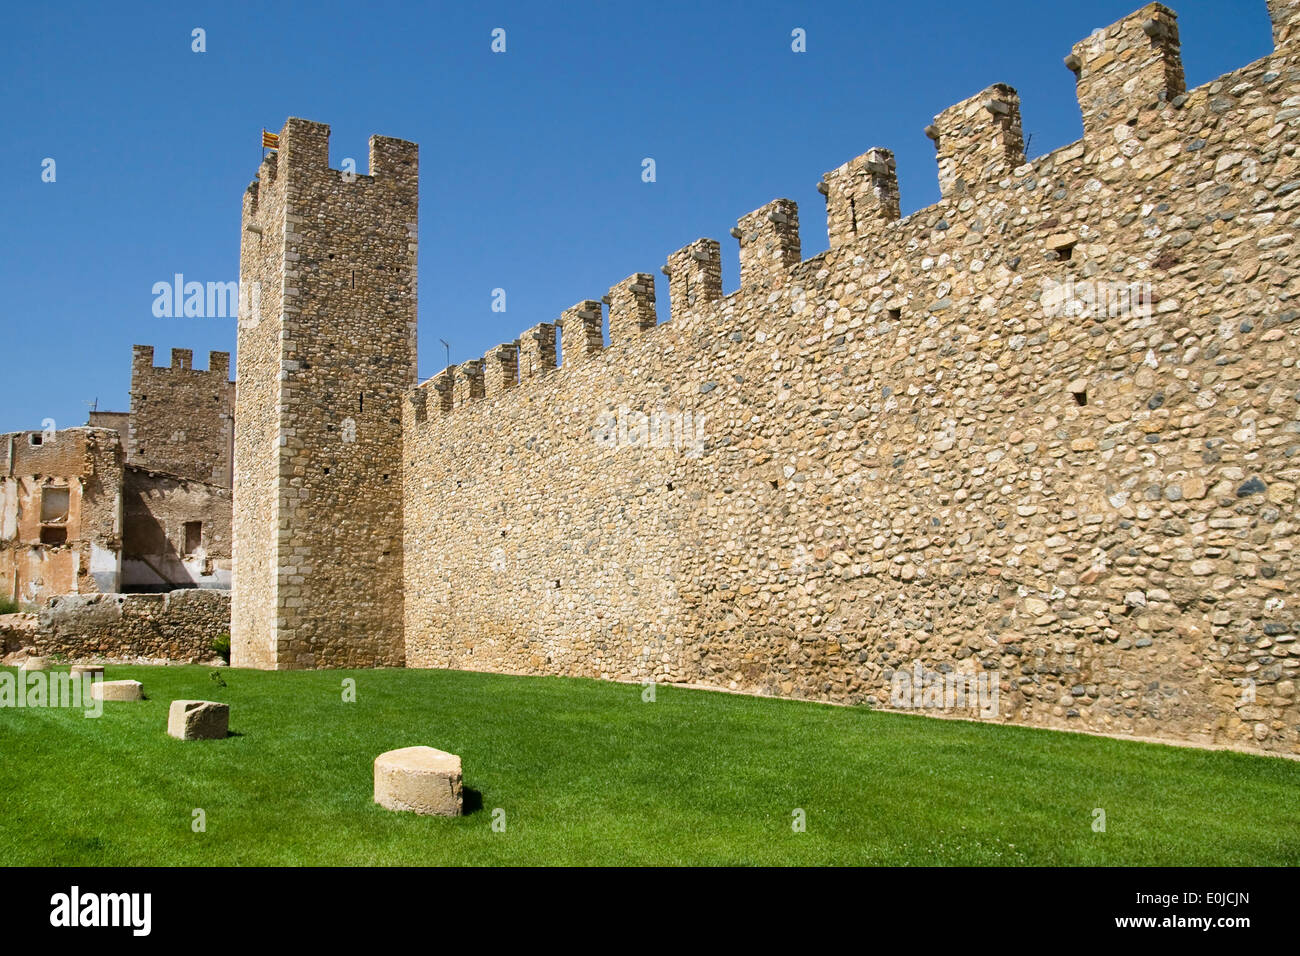 Murs de la ville fortifiée de Montblanc, en Catalogne. Banque D'Images